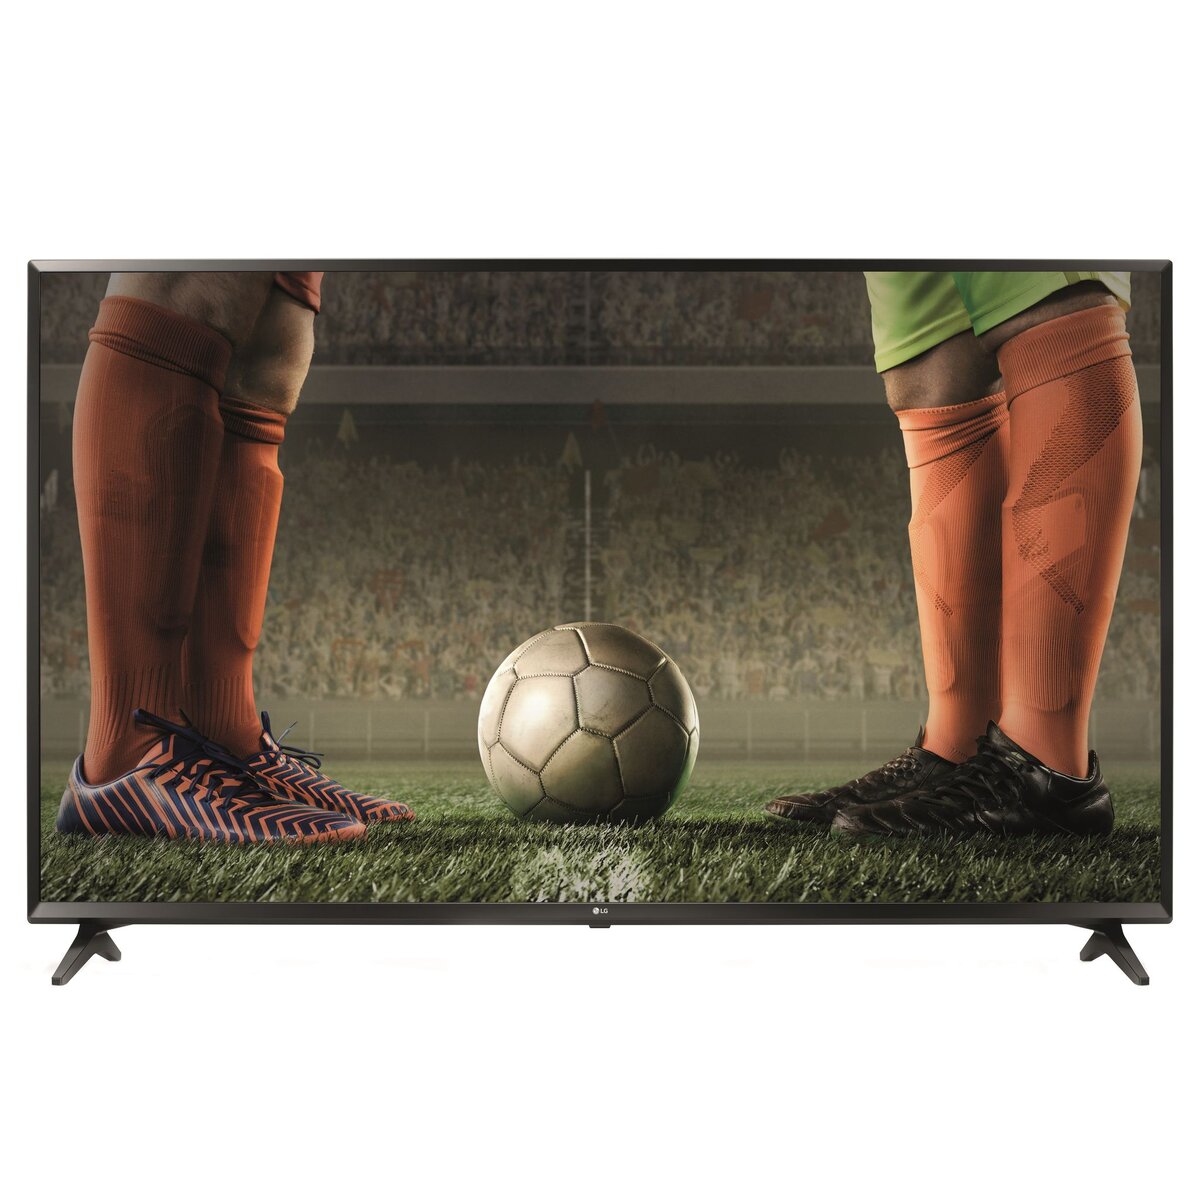 LG 65UK6100 TV LED 4K UHD 164 cm HDR Smart TV